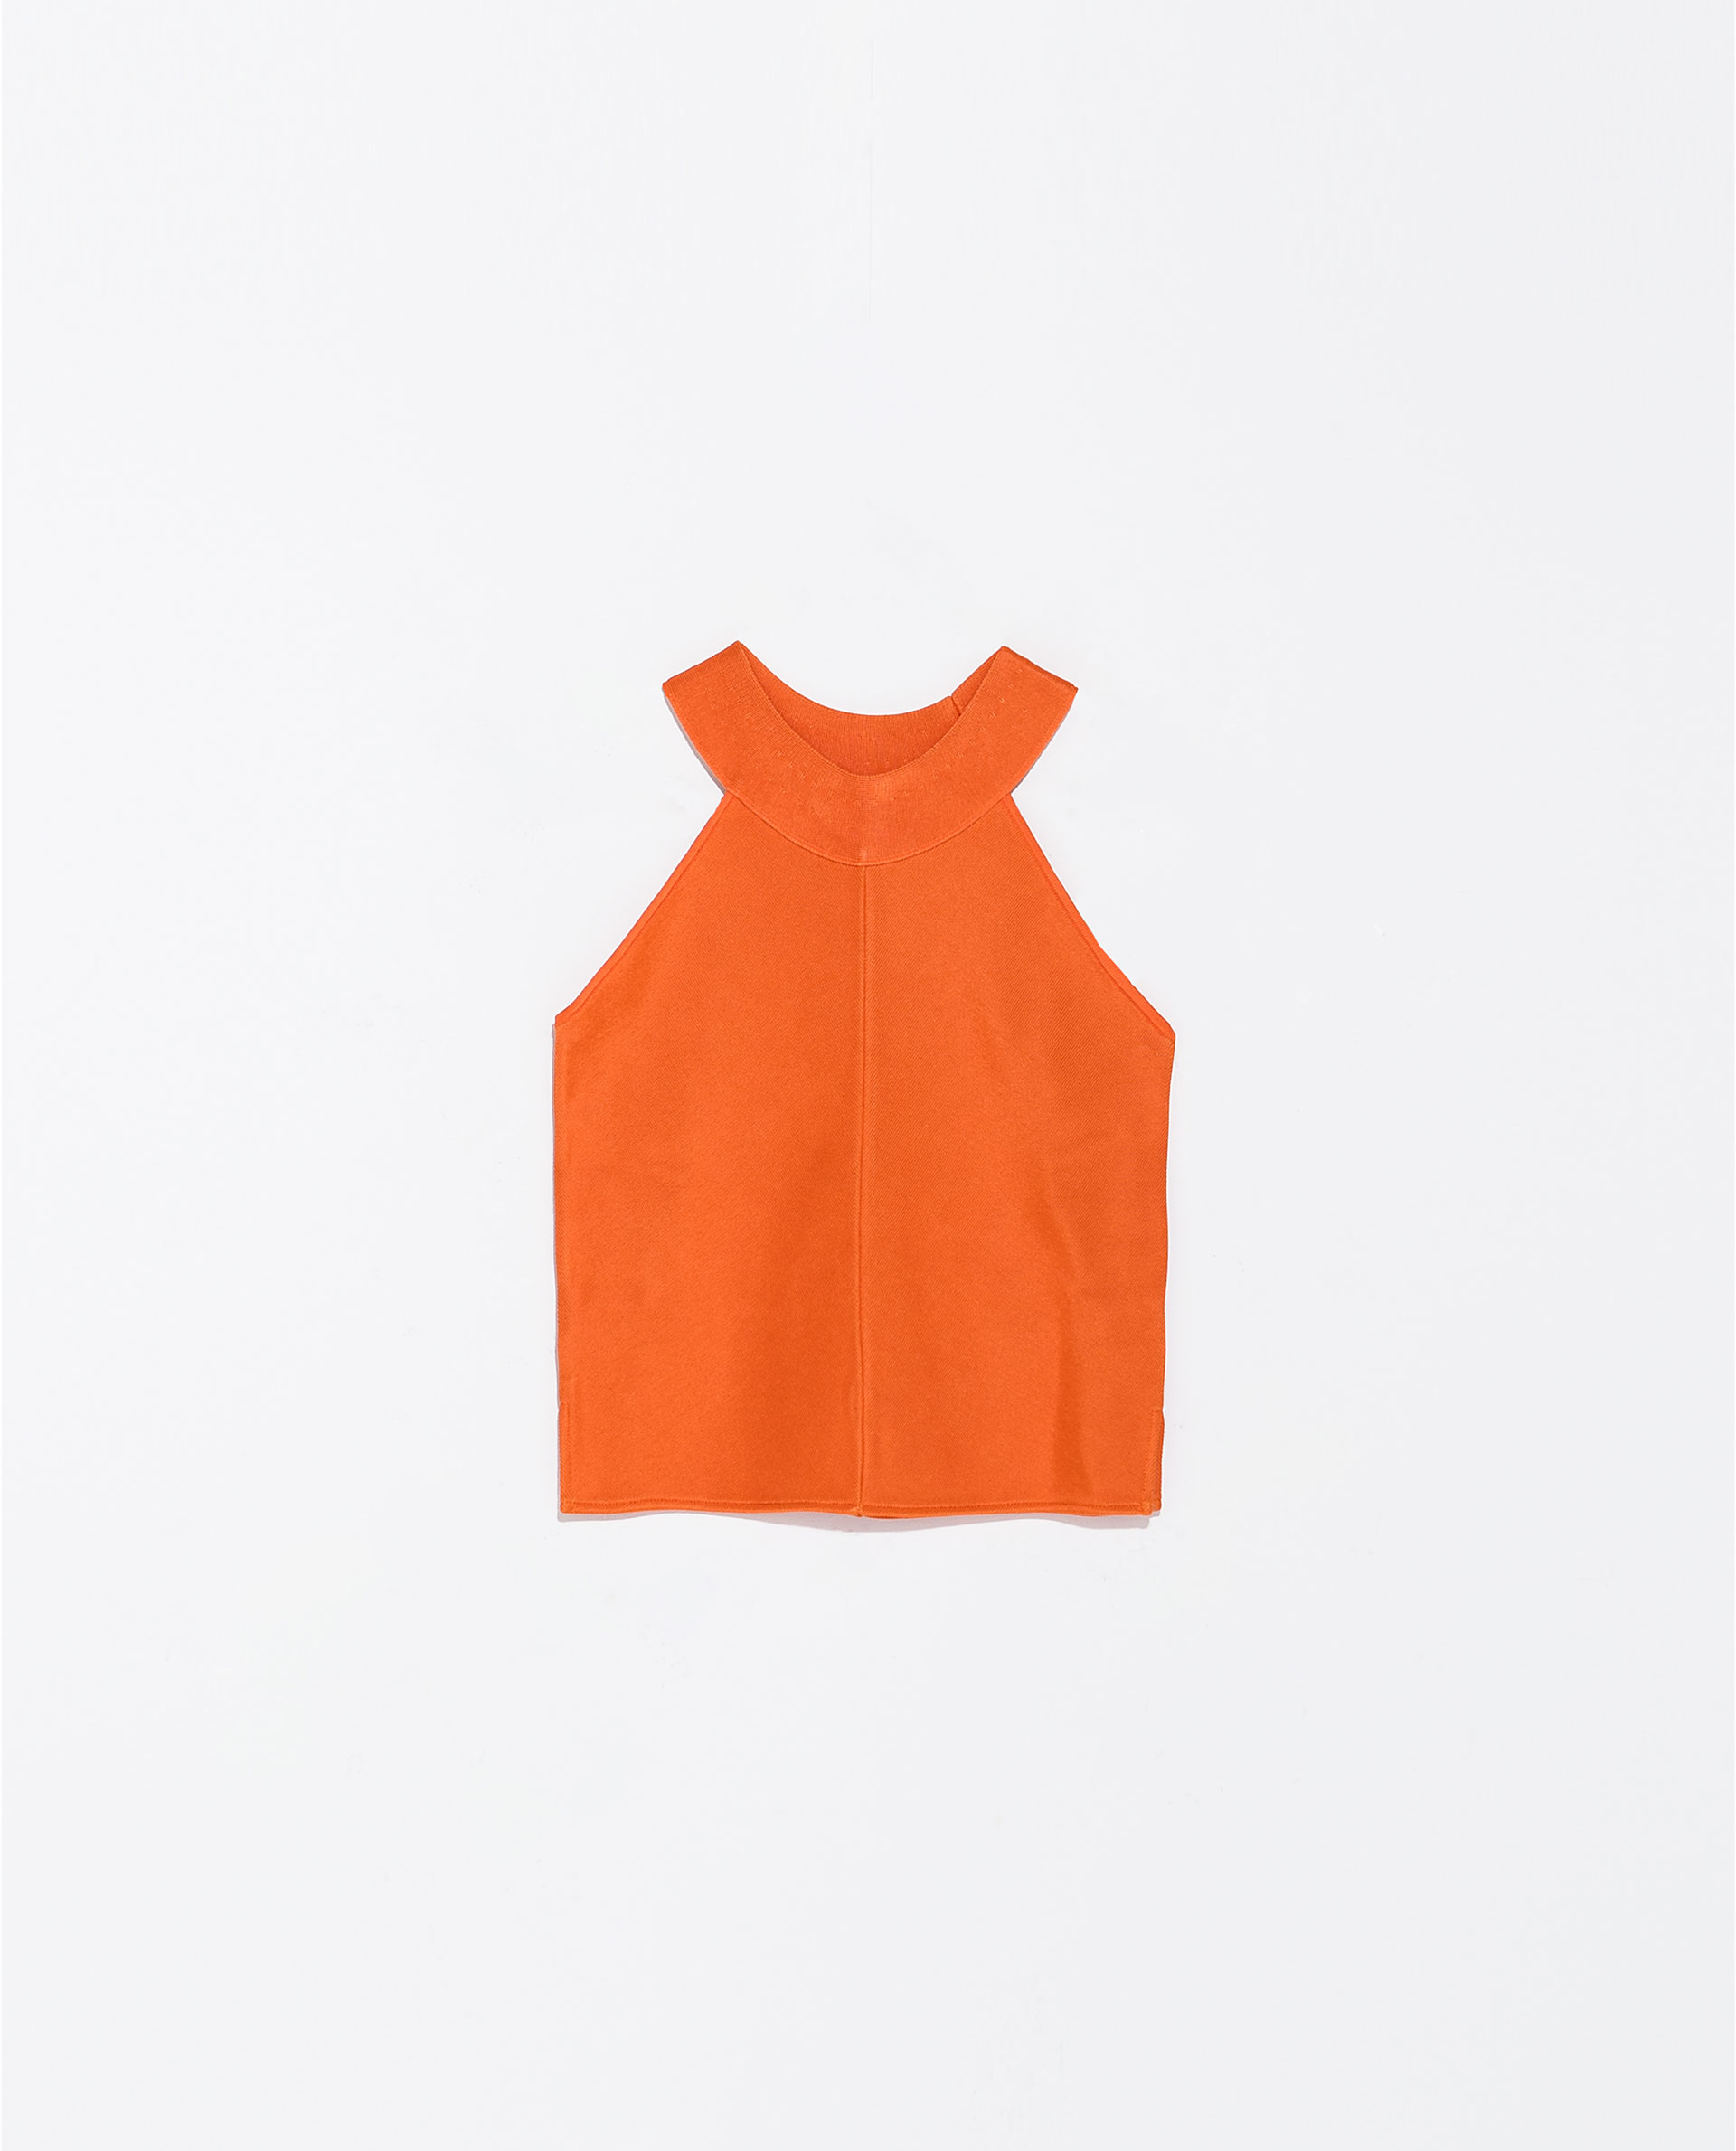 Zara Halter Neck Knit Top in Orange